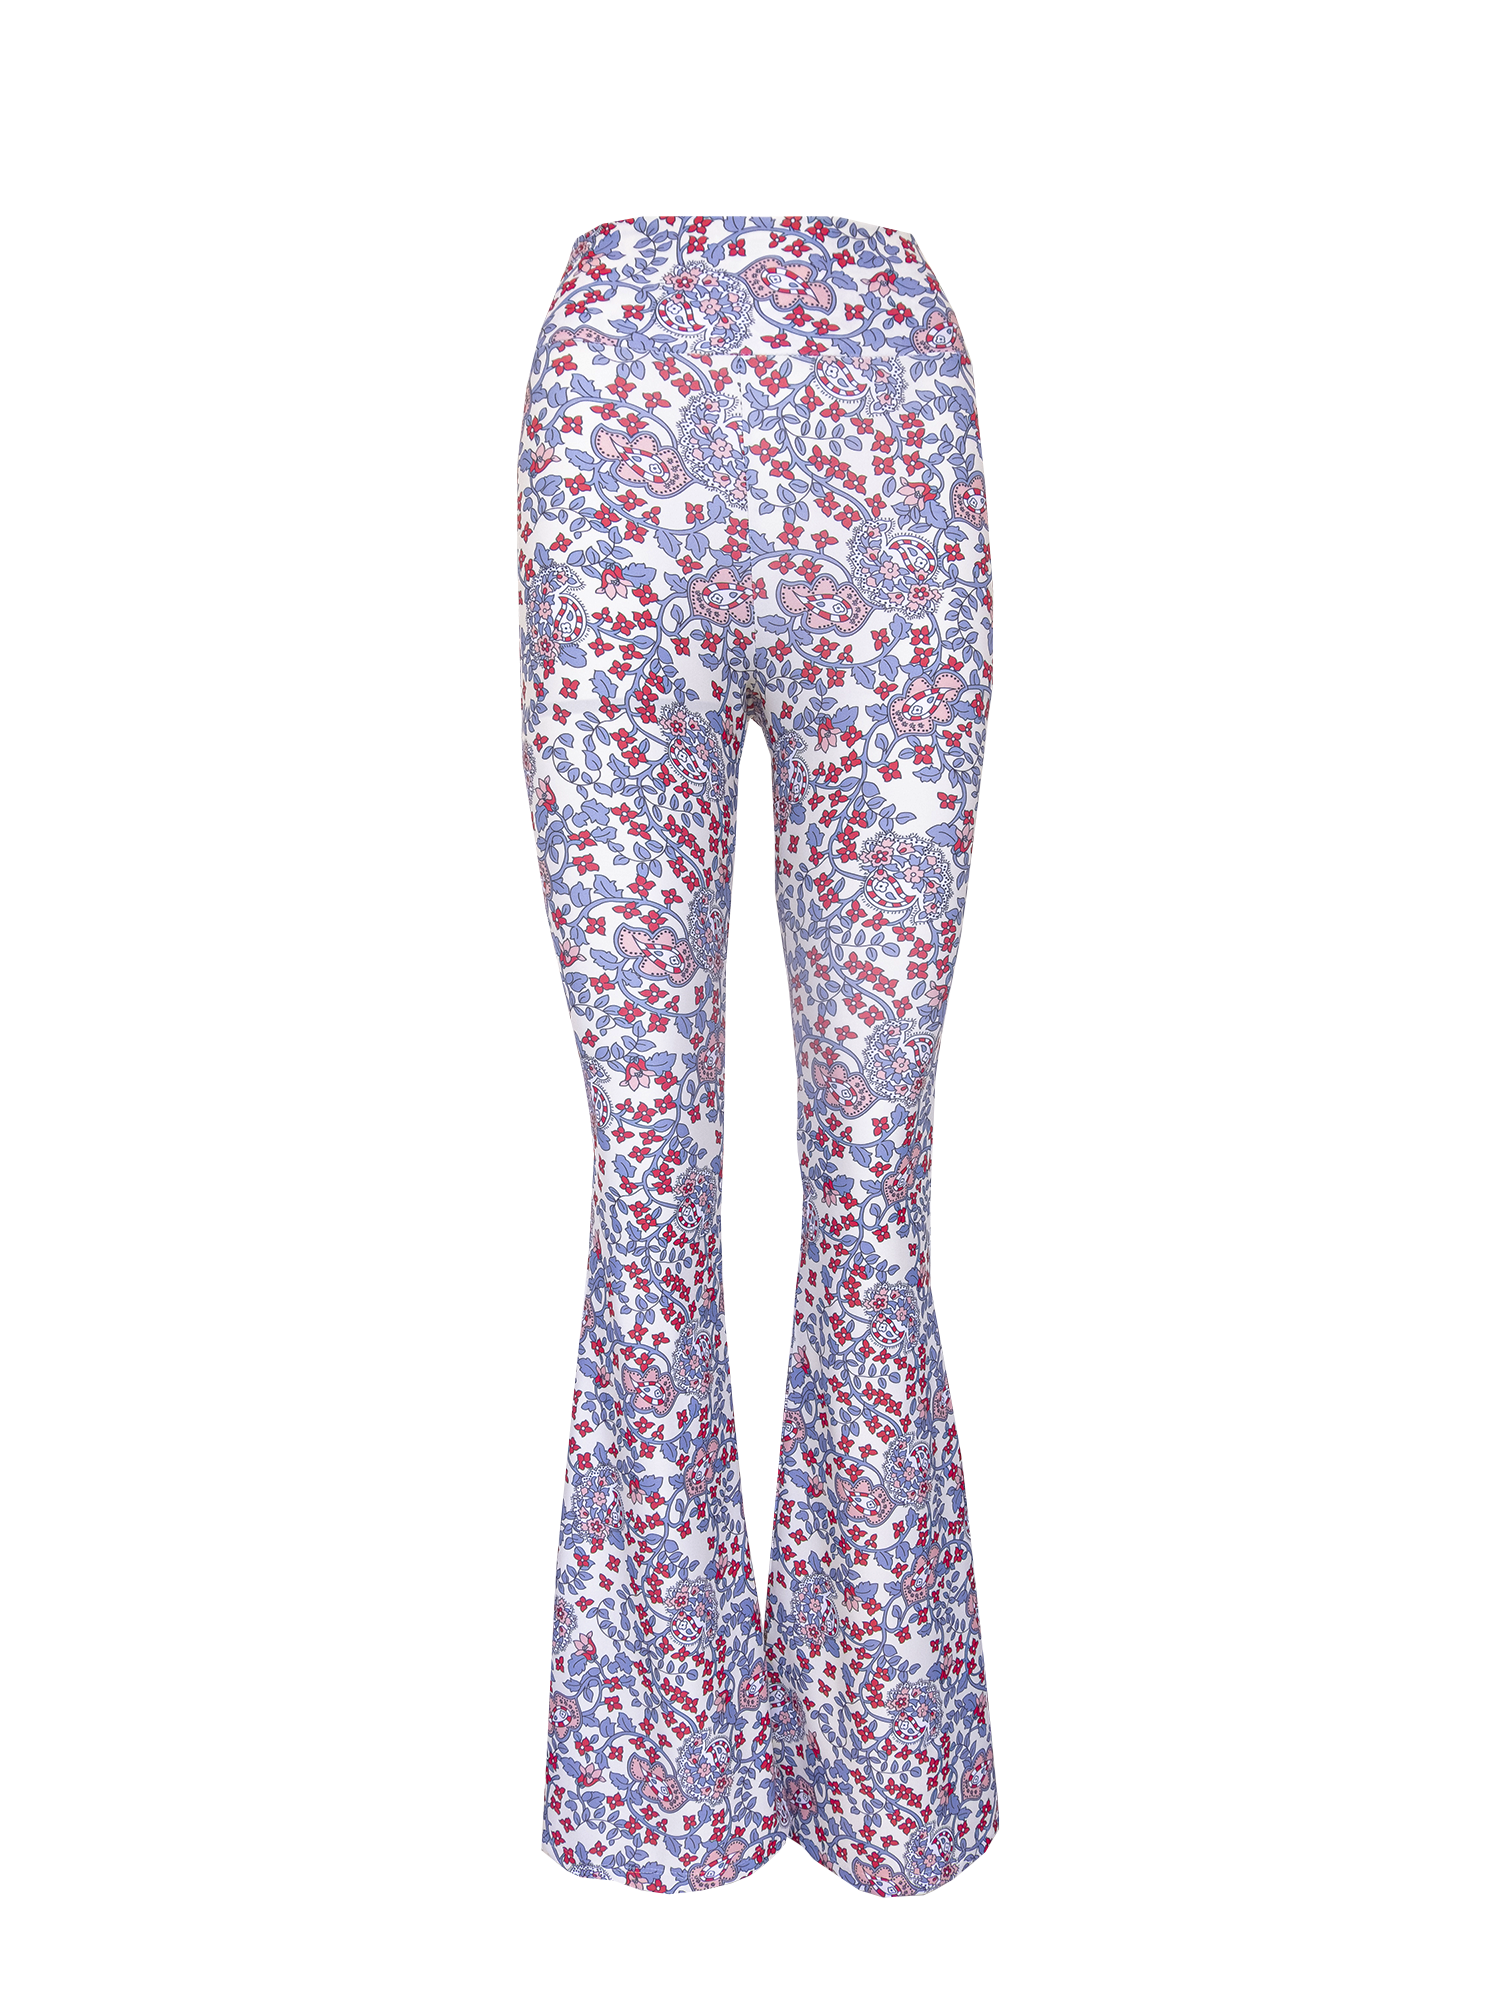 LOLA - flared pants in Kew patterned lycra